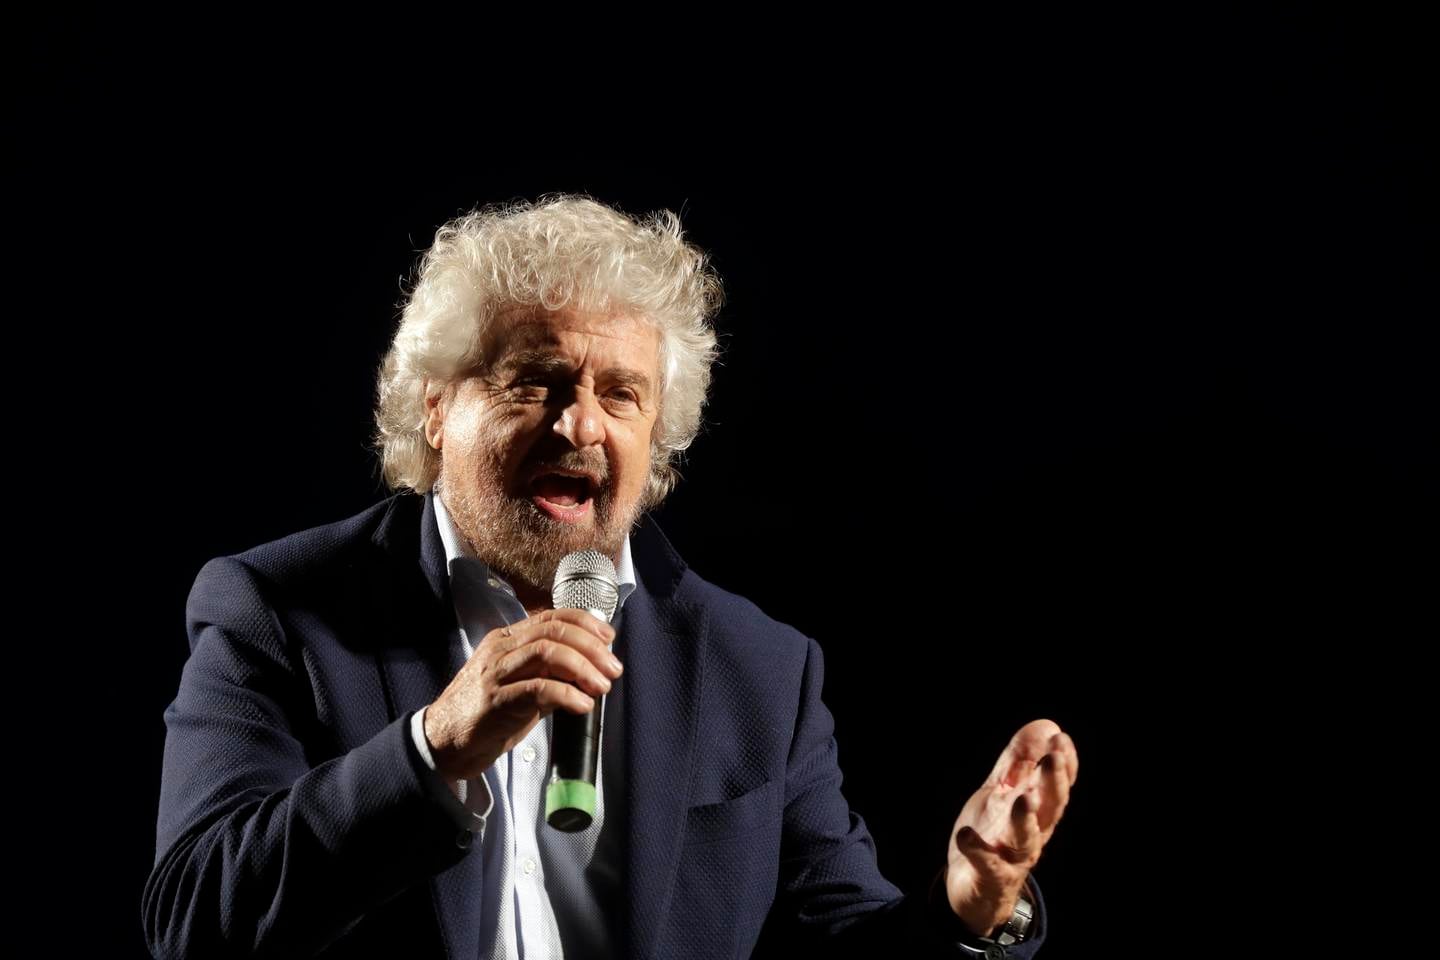 M5S-grunnlegger Beppe Grillo har den siste tida fått kritikk for å ha forsvart sønnen sin, som sammen med tre andre menn er anklaget for seksuelt overgrep mot en kvinne. Ifølge Grillo var det samtykke.